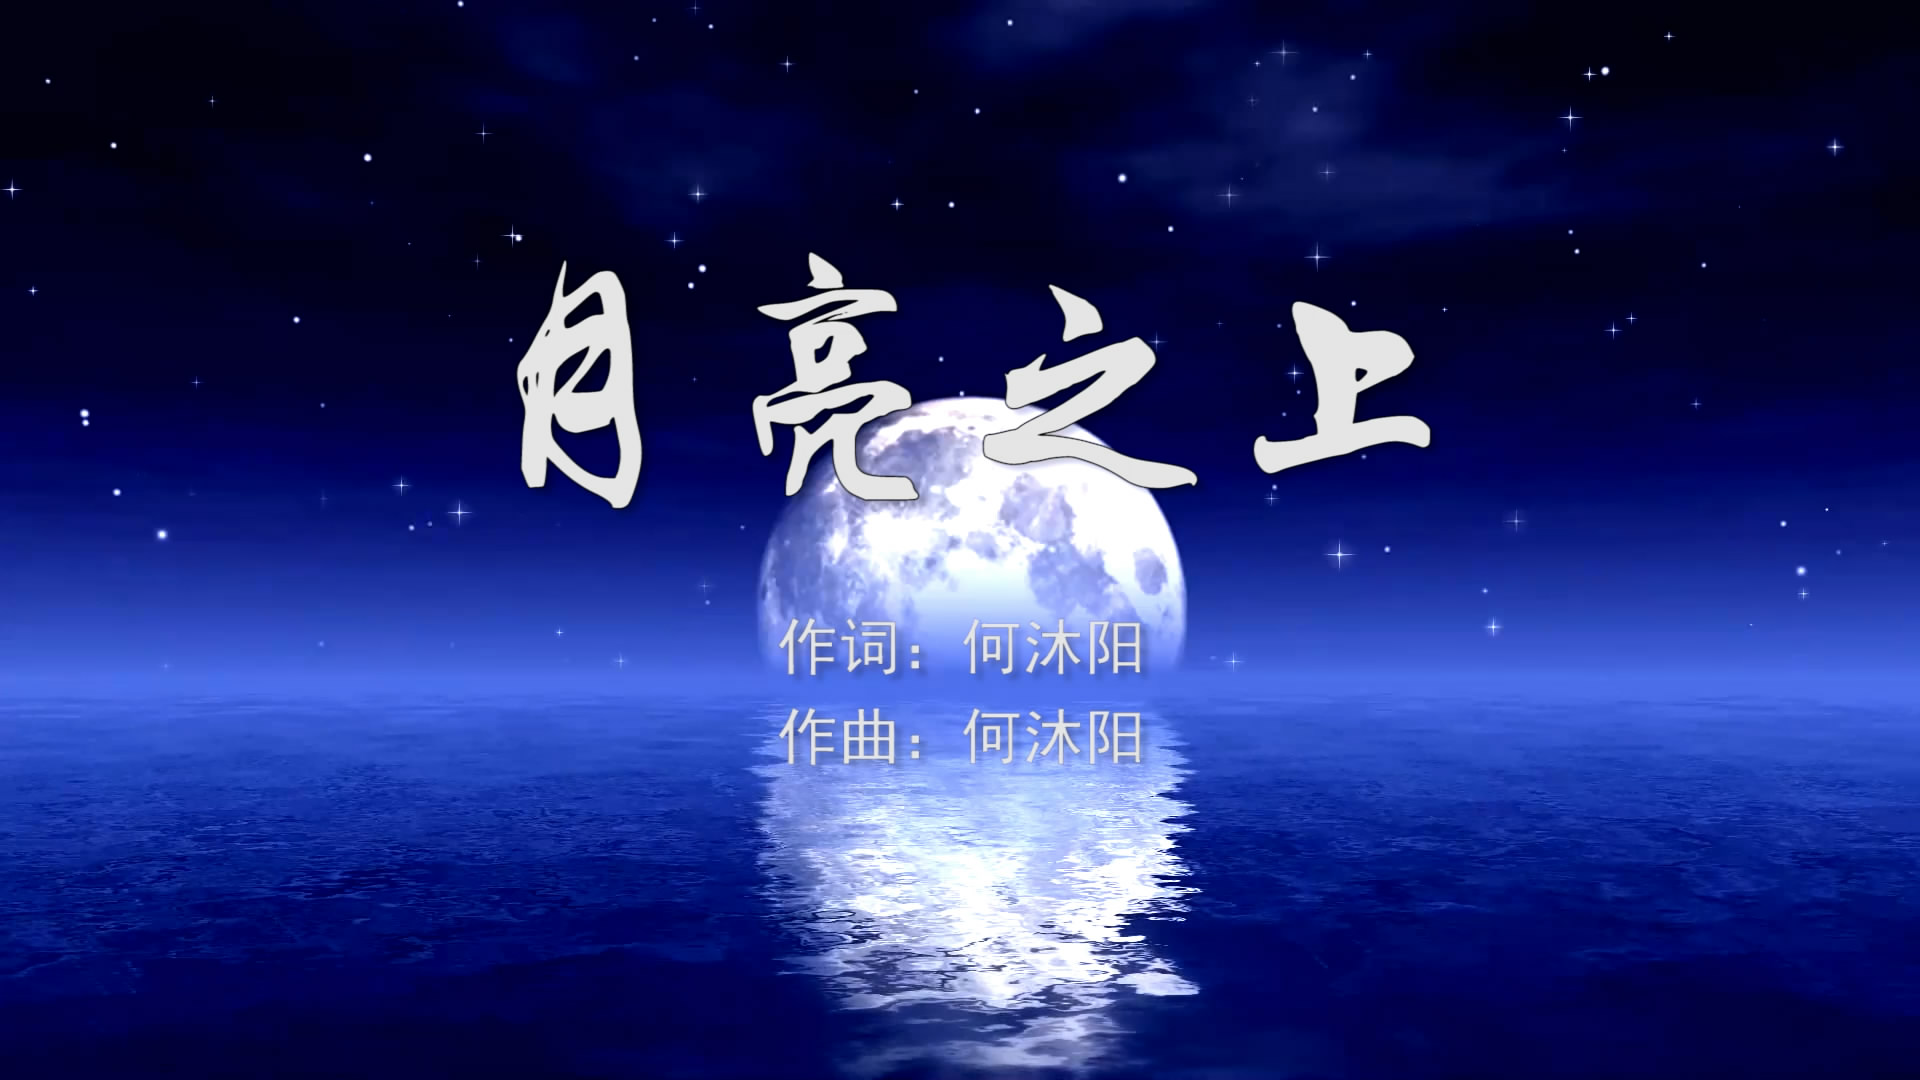 月亮之上 凤凰传奇MV字幕配乐伴奏舞台演出LED背景大屏幕视频素材TV